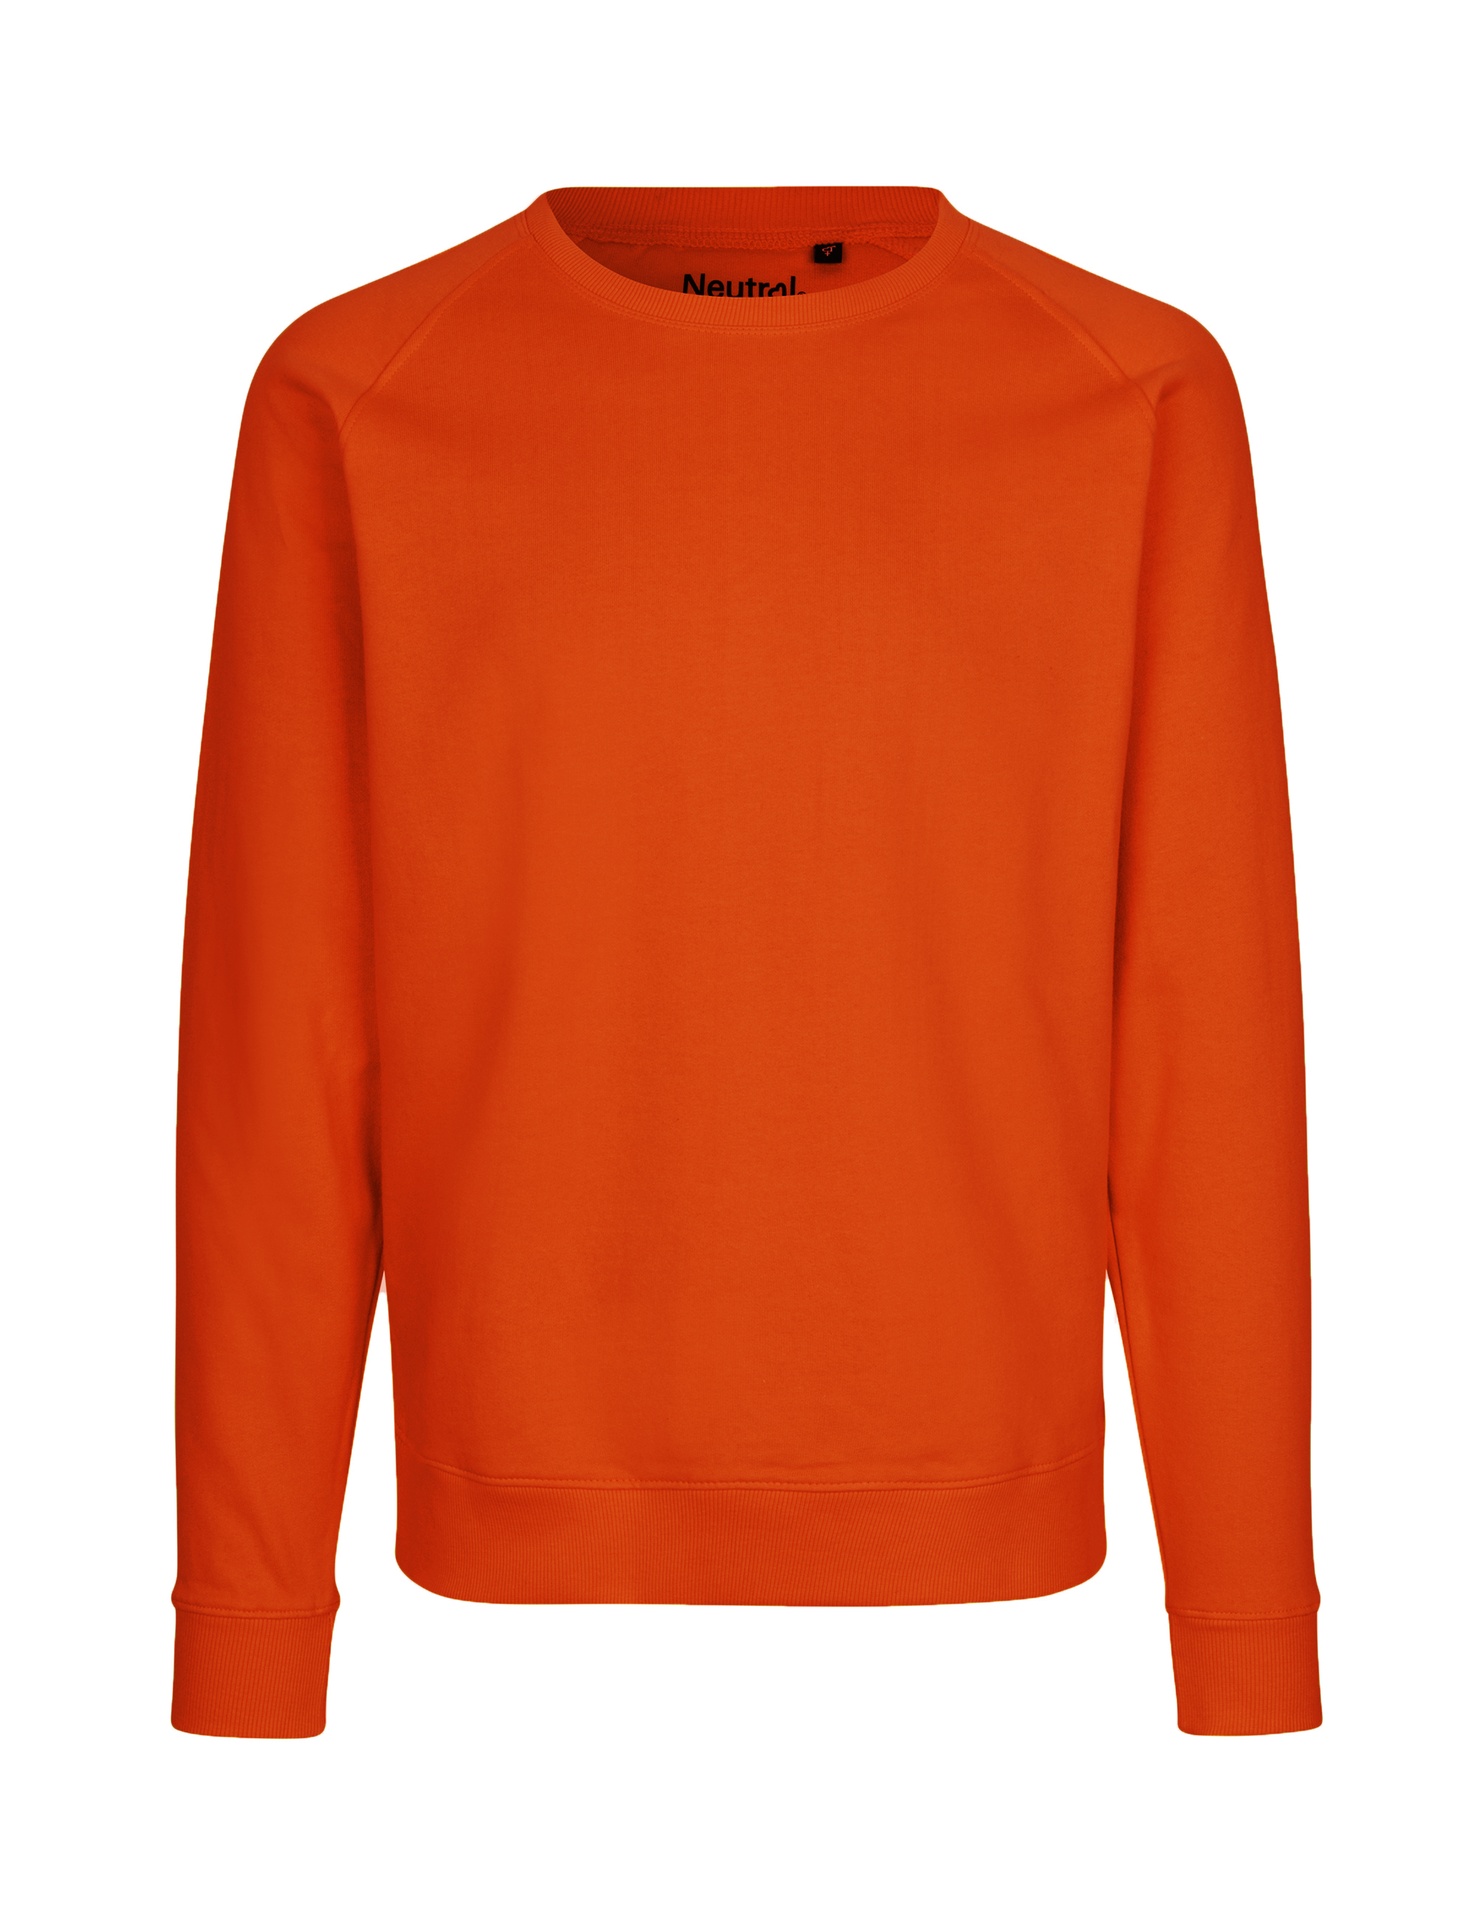 [PR/02782] Unisex Sweatshirt (Orange 30, XL)